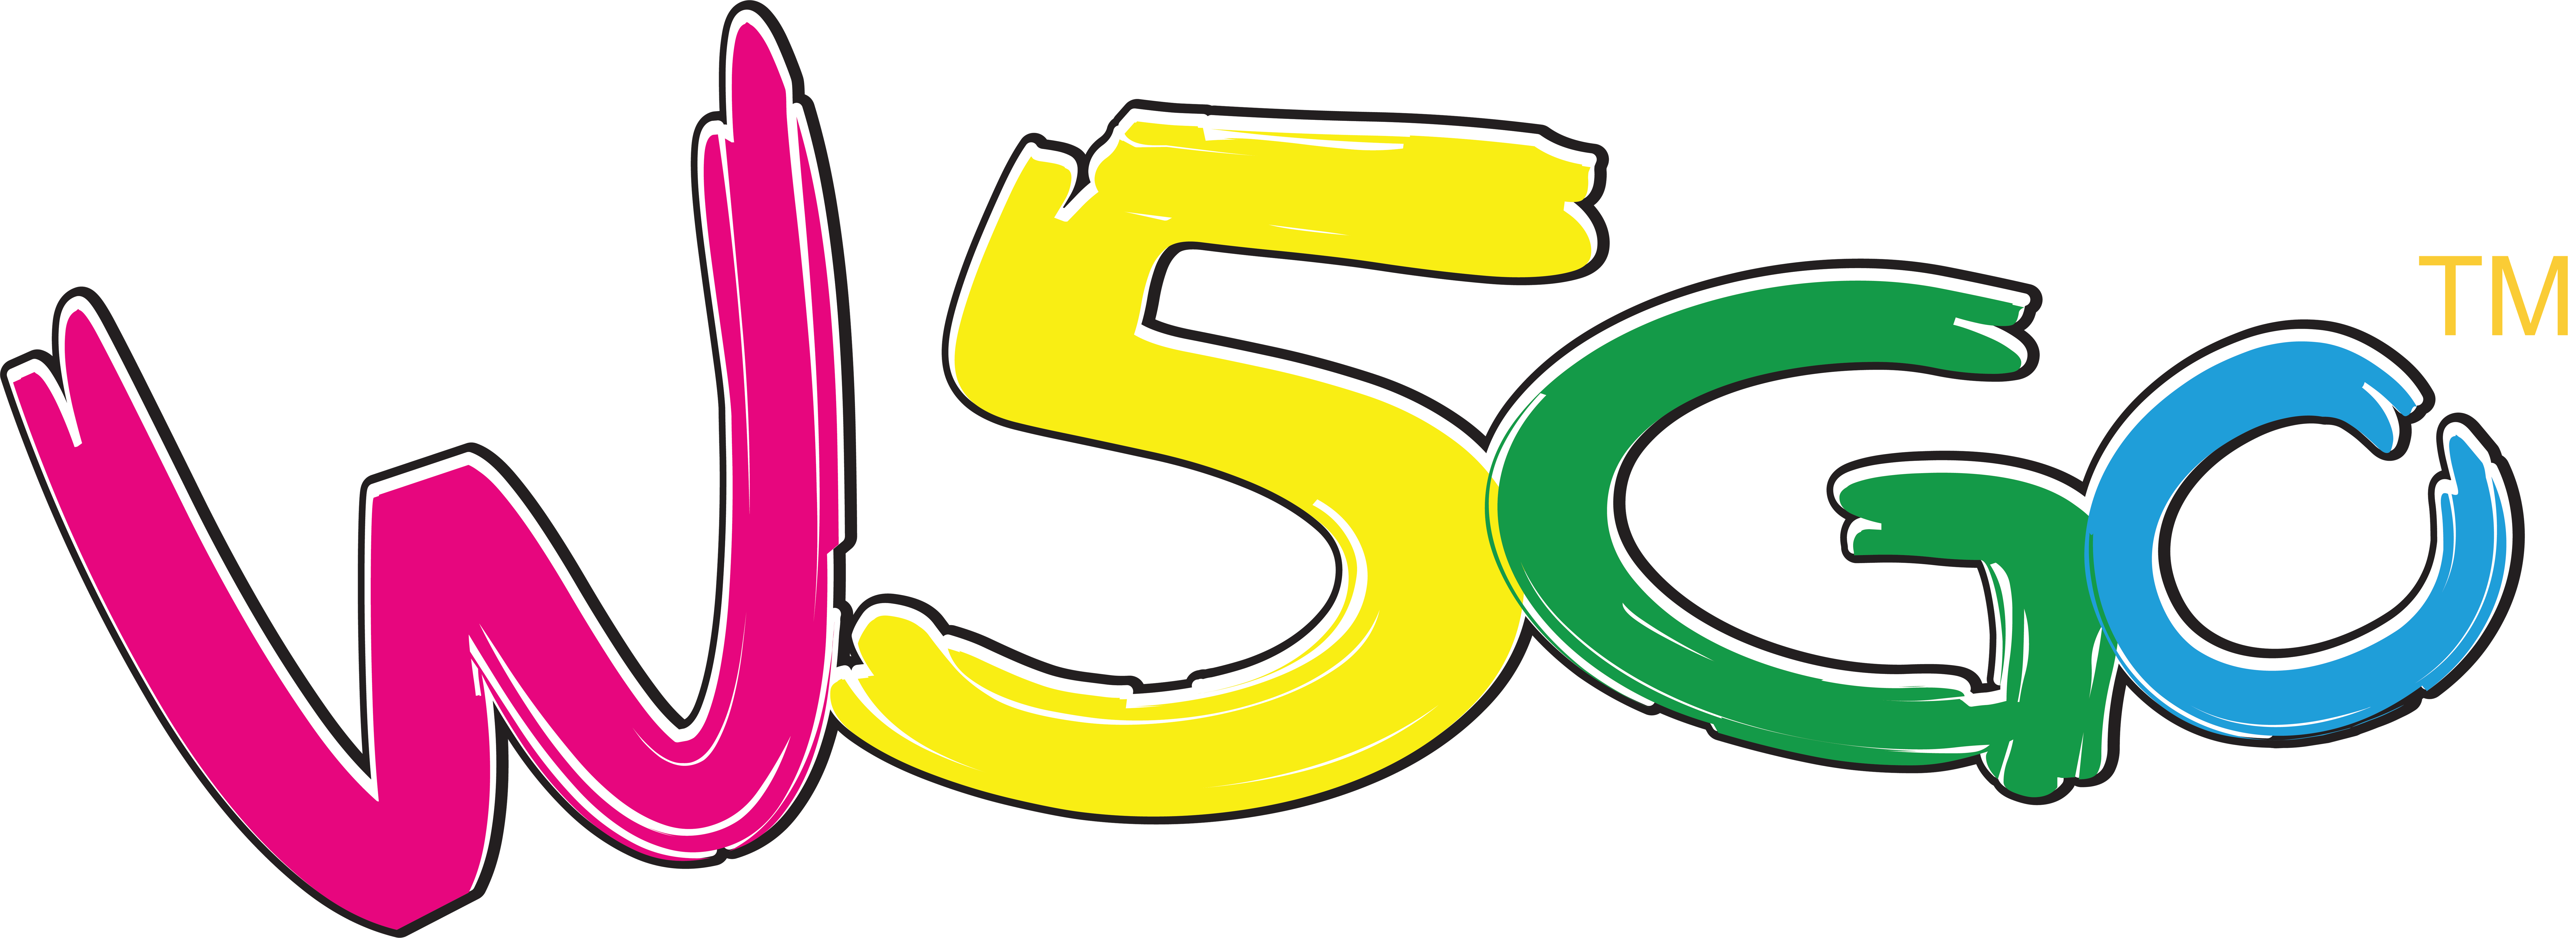 w5go logo